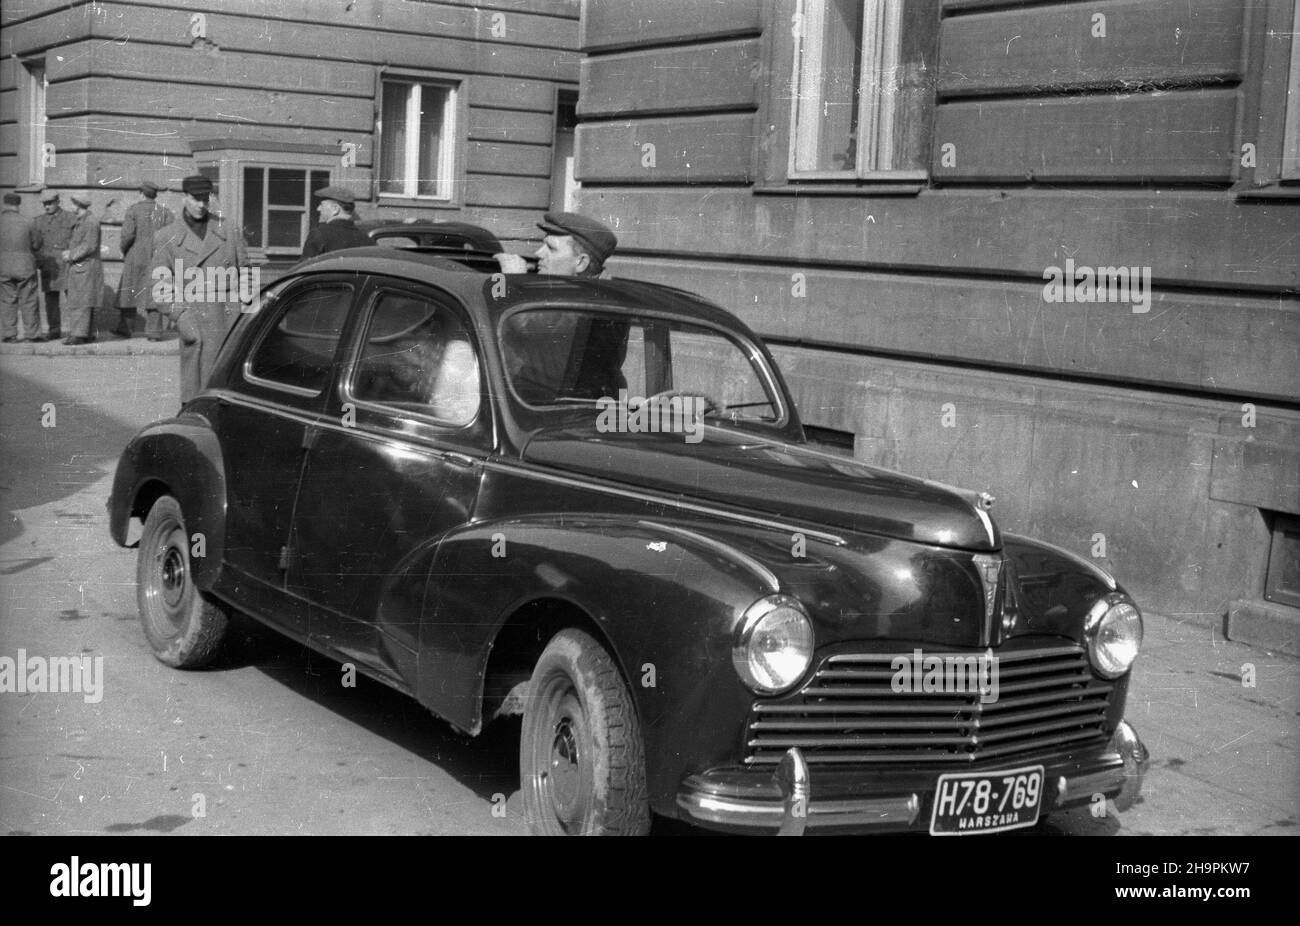 Warszawa, 1949-03. Samochód marki Peugeot 203, produkcji francuskiej. msa  PAP Warschau, März 1949. In Frankreich gefertigtes Peugeot 203-Auto. msa  PAP Stockfotografie - Alamy